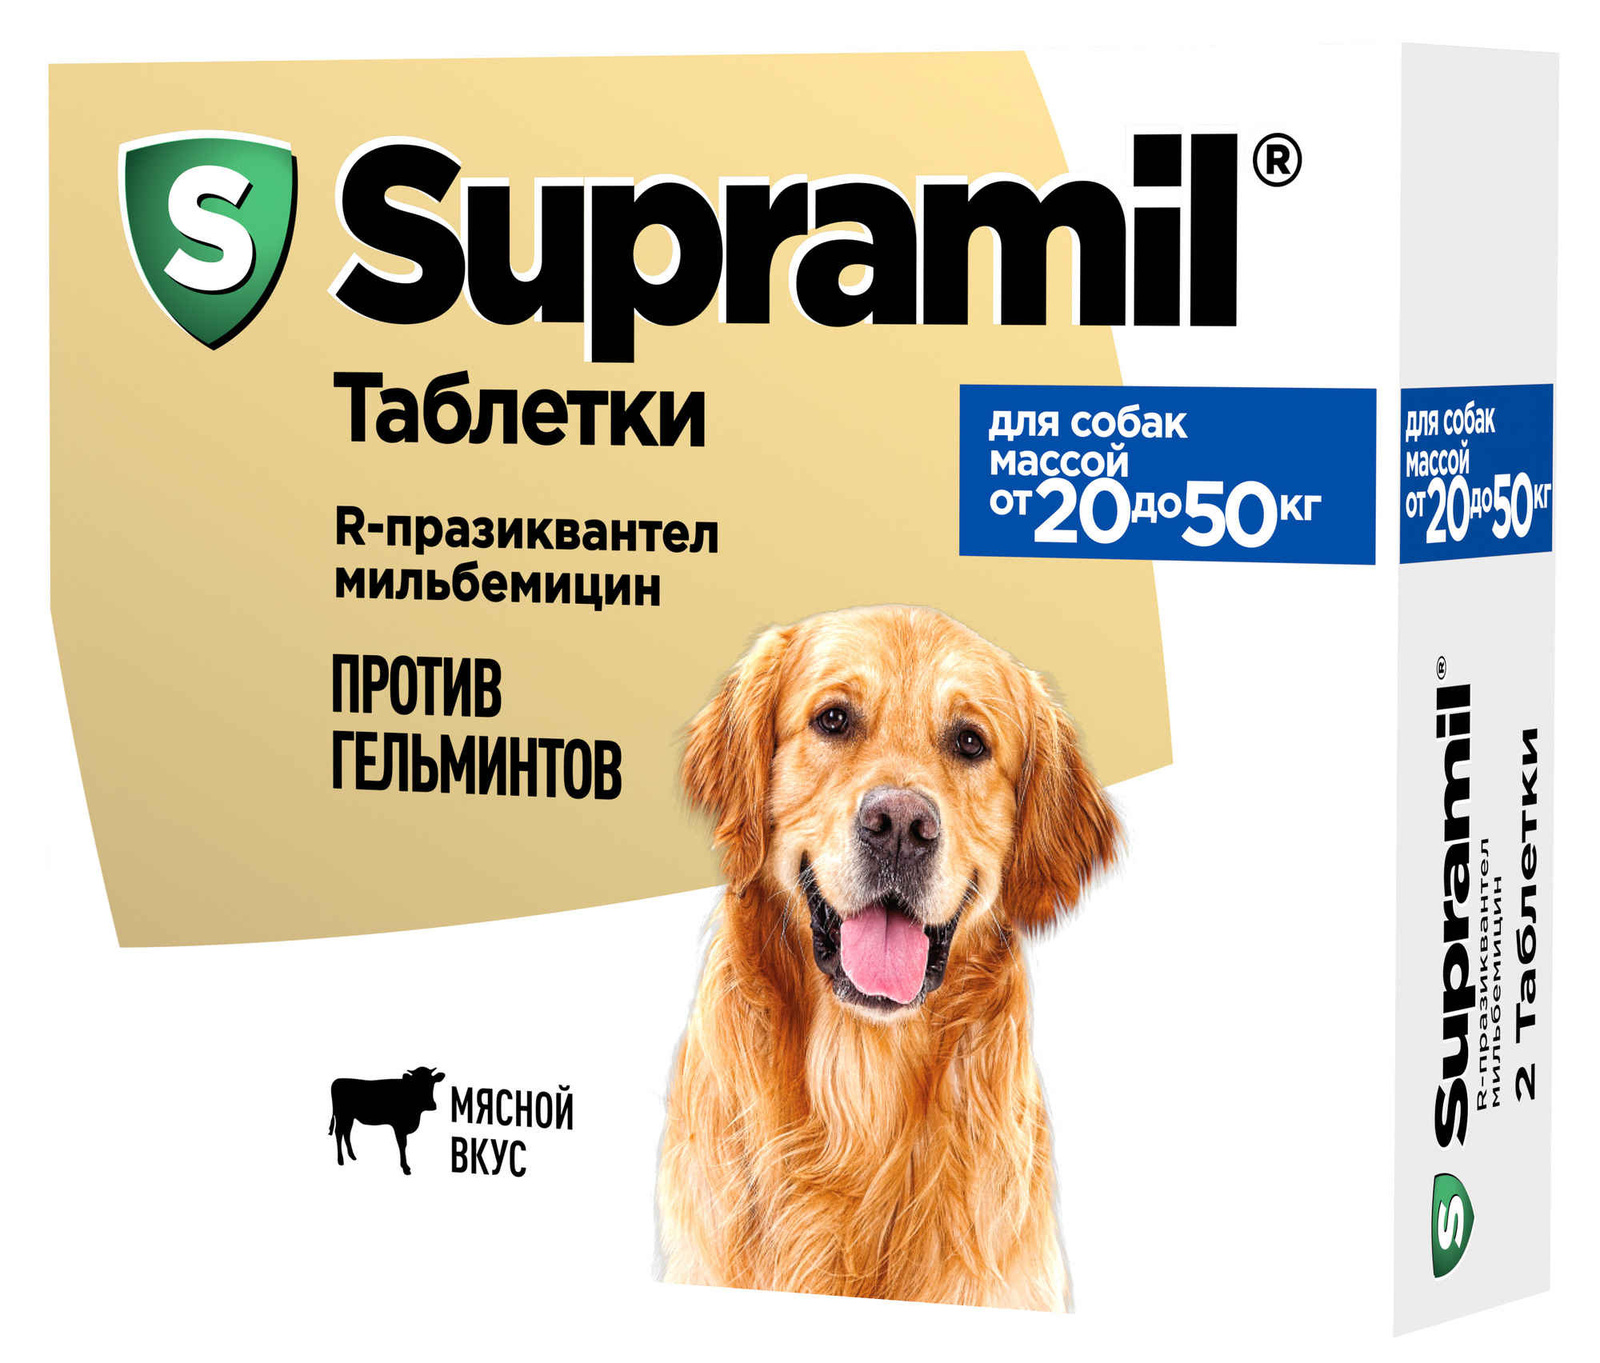 Астрафарм антигельминтный препарат Supramil для щенков и собак массой от 20 до 50 кг, таблетки (20 г) Астрафарм антигельминтный препарат Supramil для щенков и собак массой от 20 до 50 кг, таблетки (20 г - фото 1